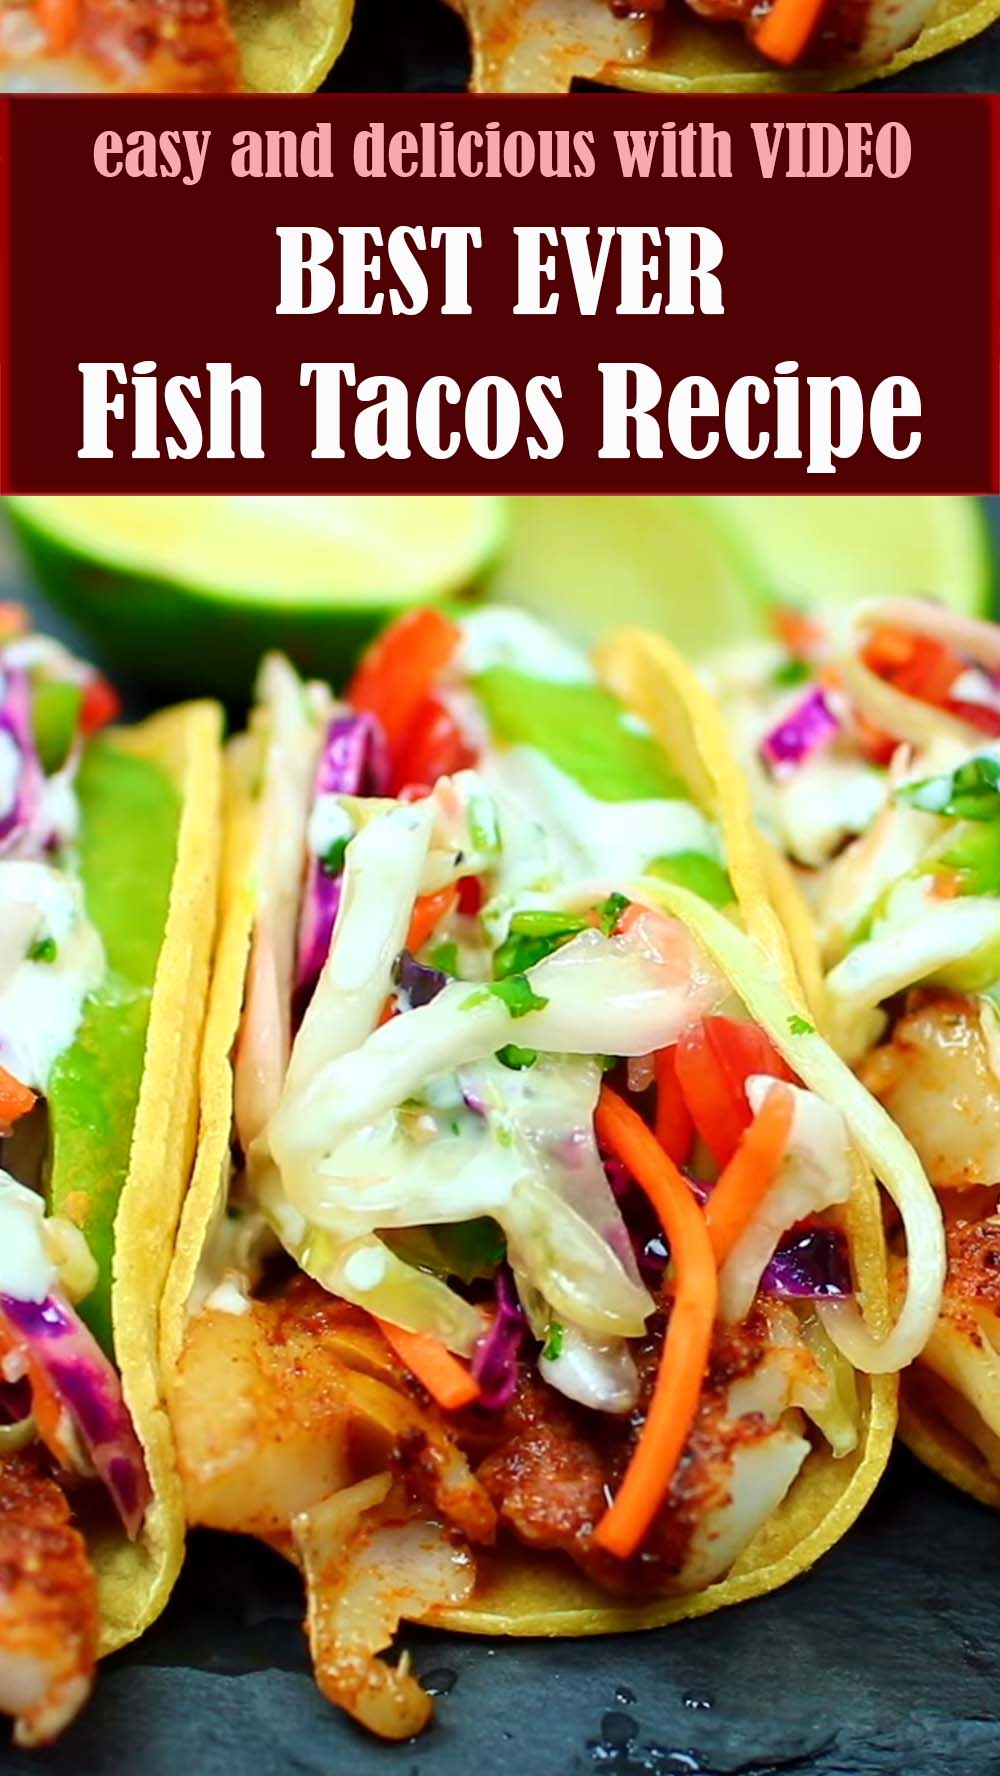 BEST EVER Fish Tacos Recipe